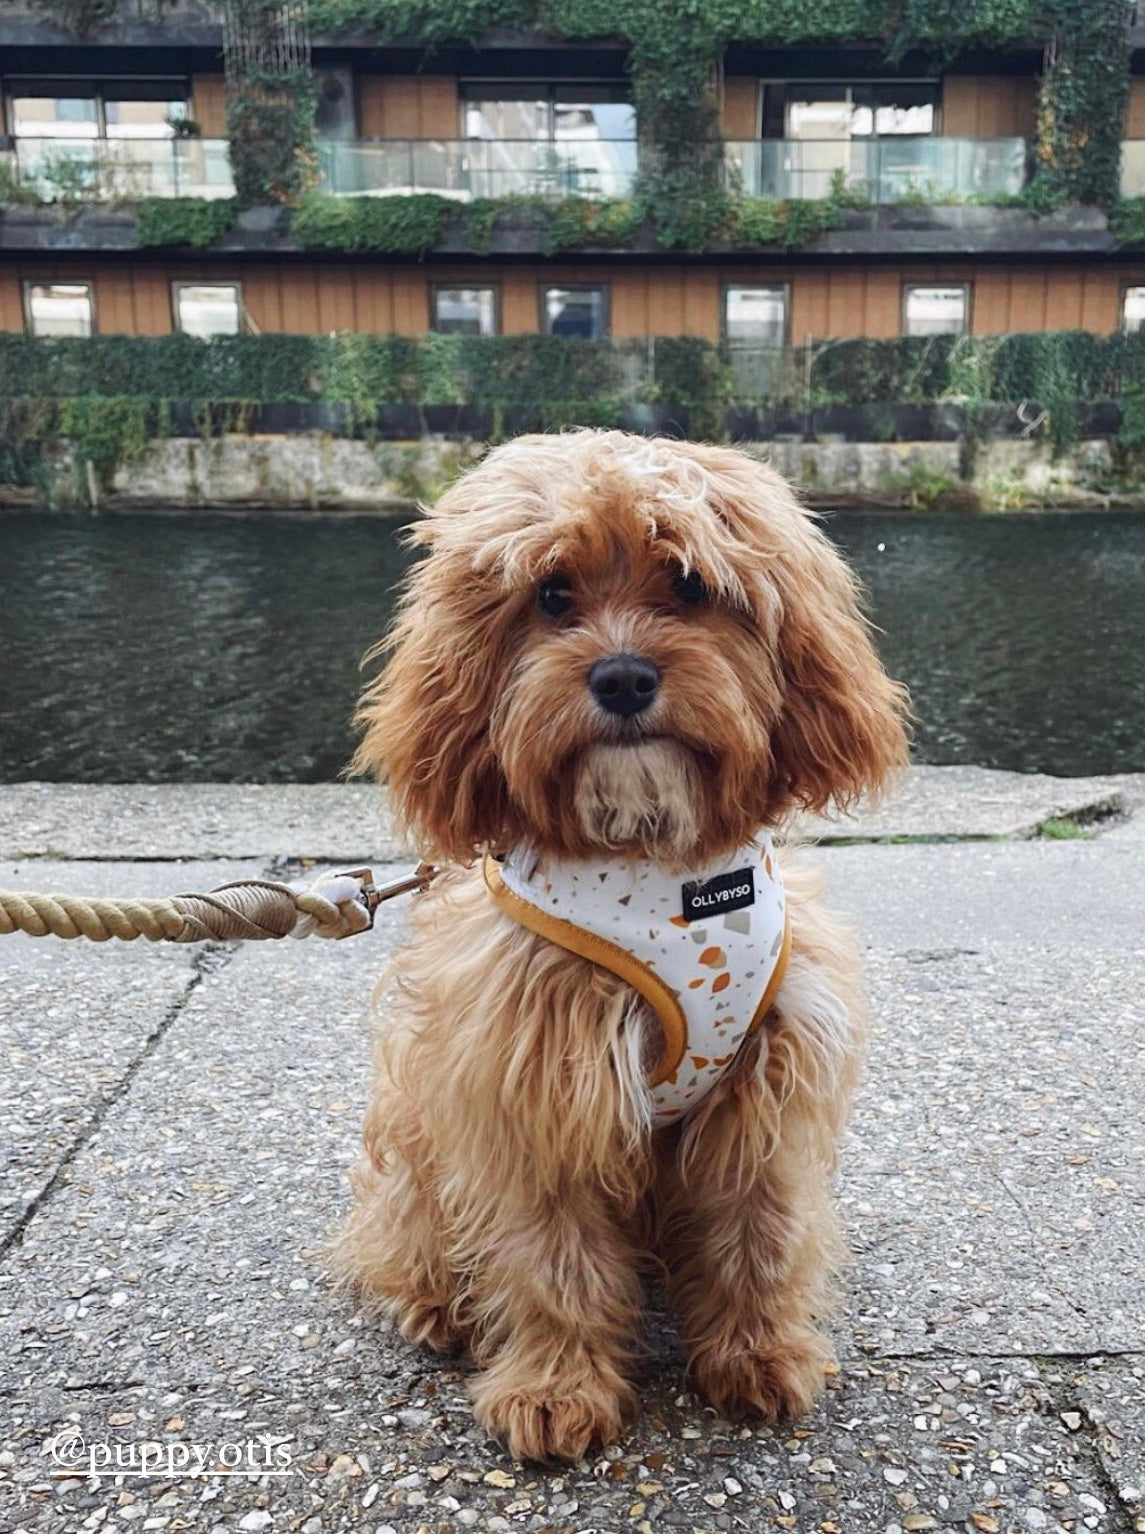 Fully Adjustable Dog Harness UK, dog harness UK, dog harness for puppy, adjustable dog harness